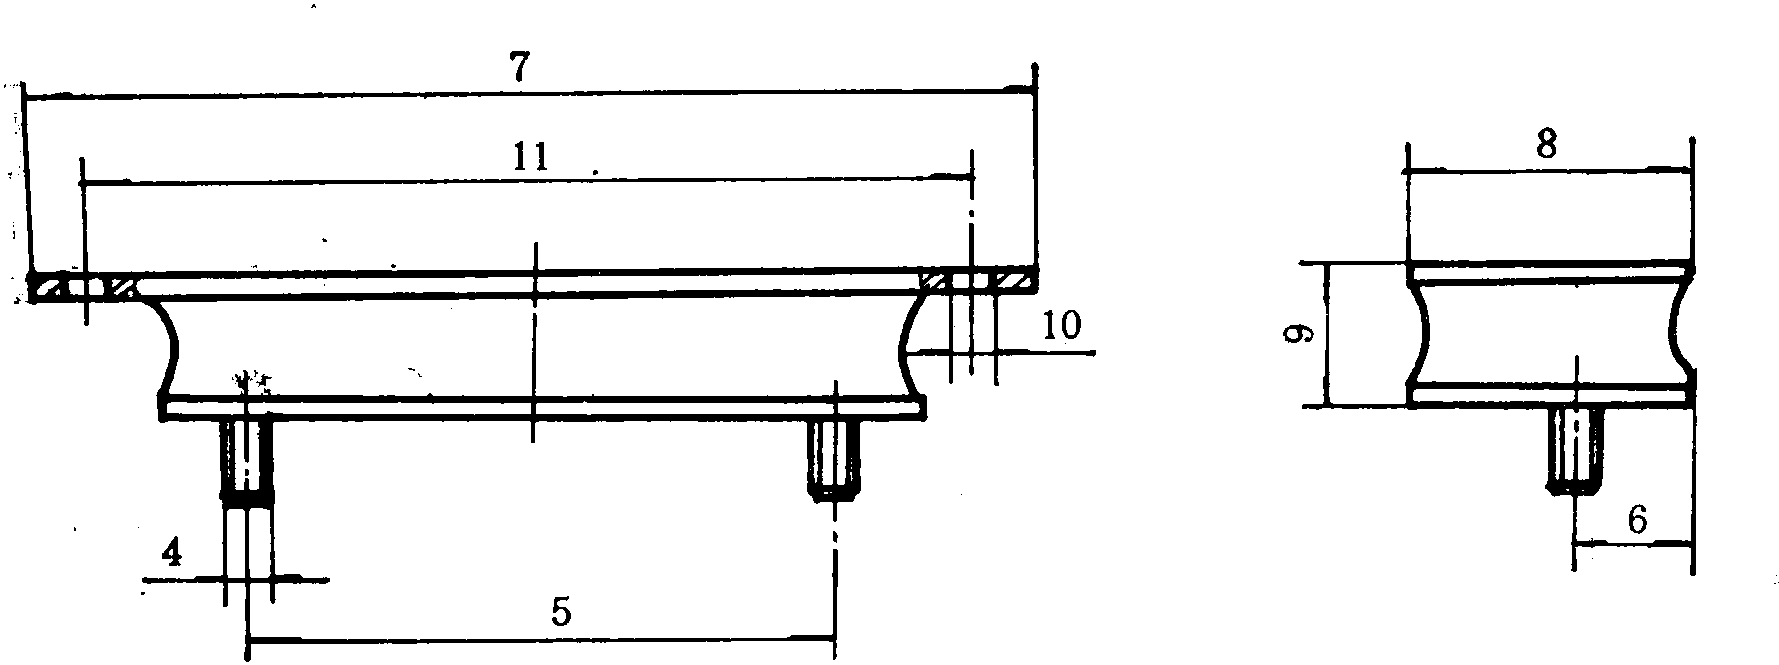 1.1 发动机前悬置胶垫总成 (图1)